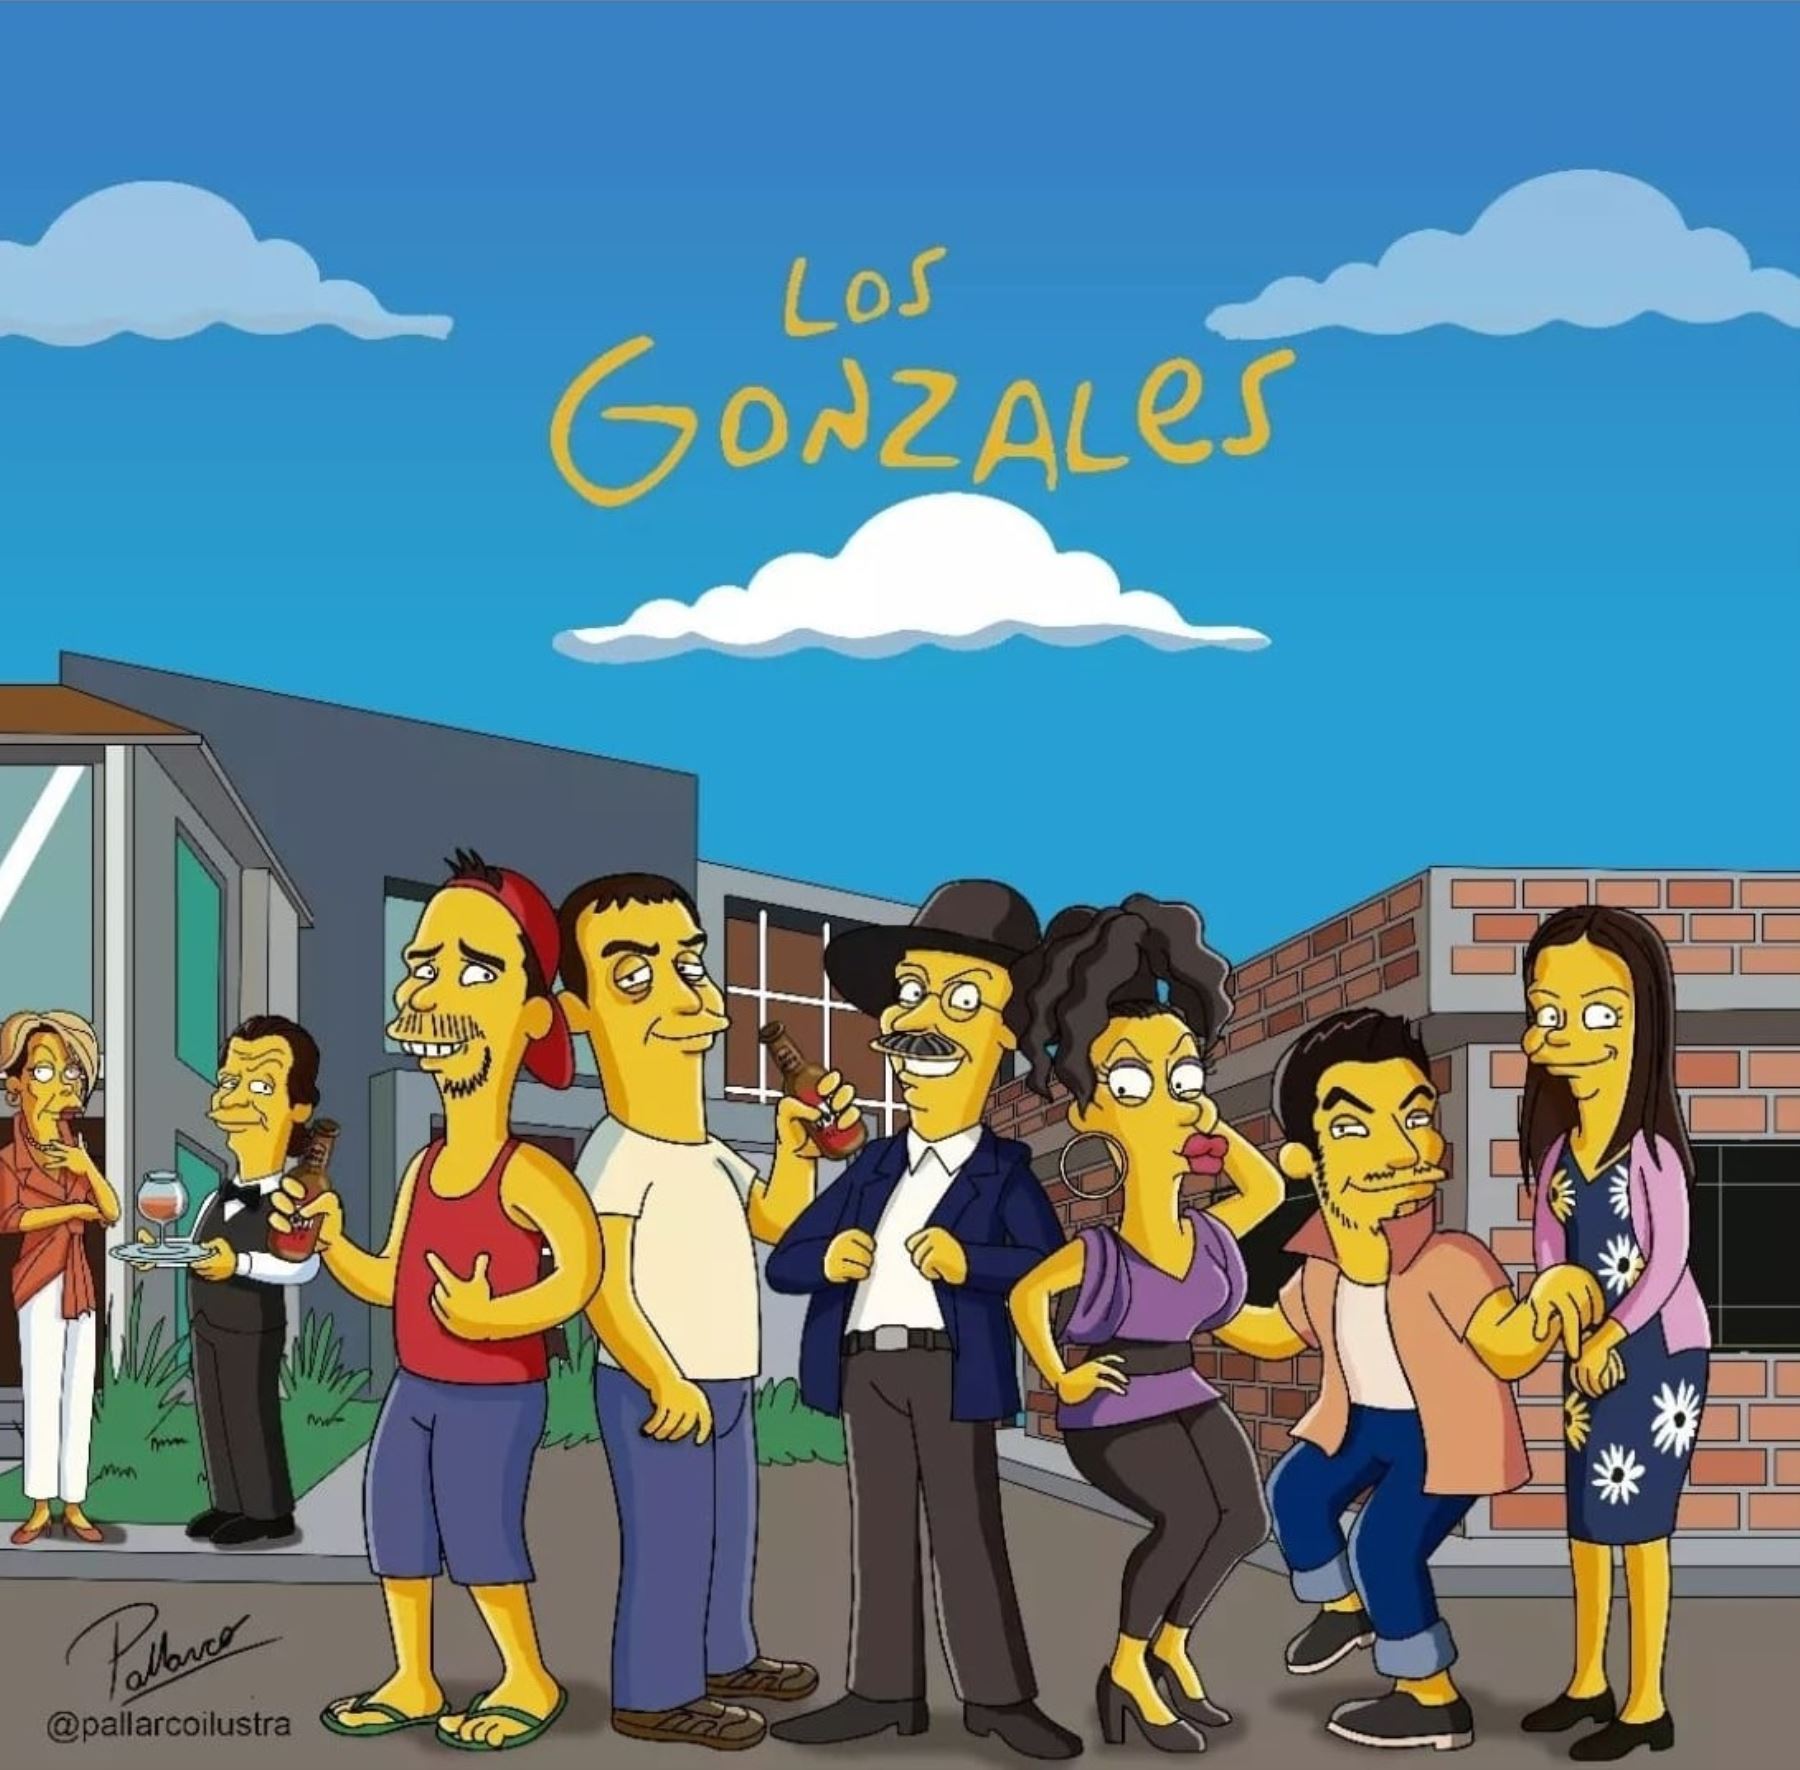 Ilustrador peruano recrea a Los Gonzalez y Maldini al estilo de Los Simpson.